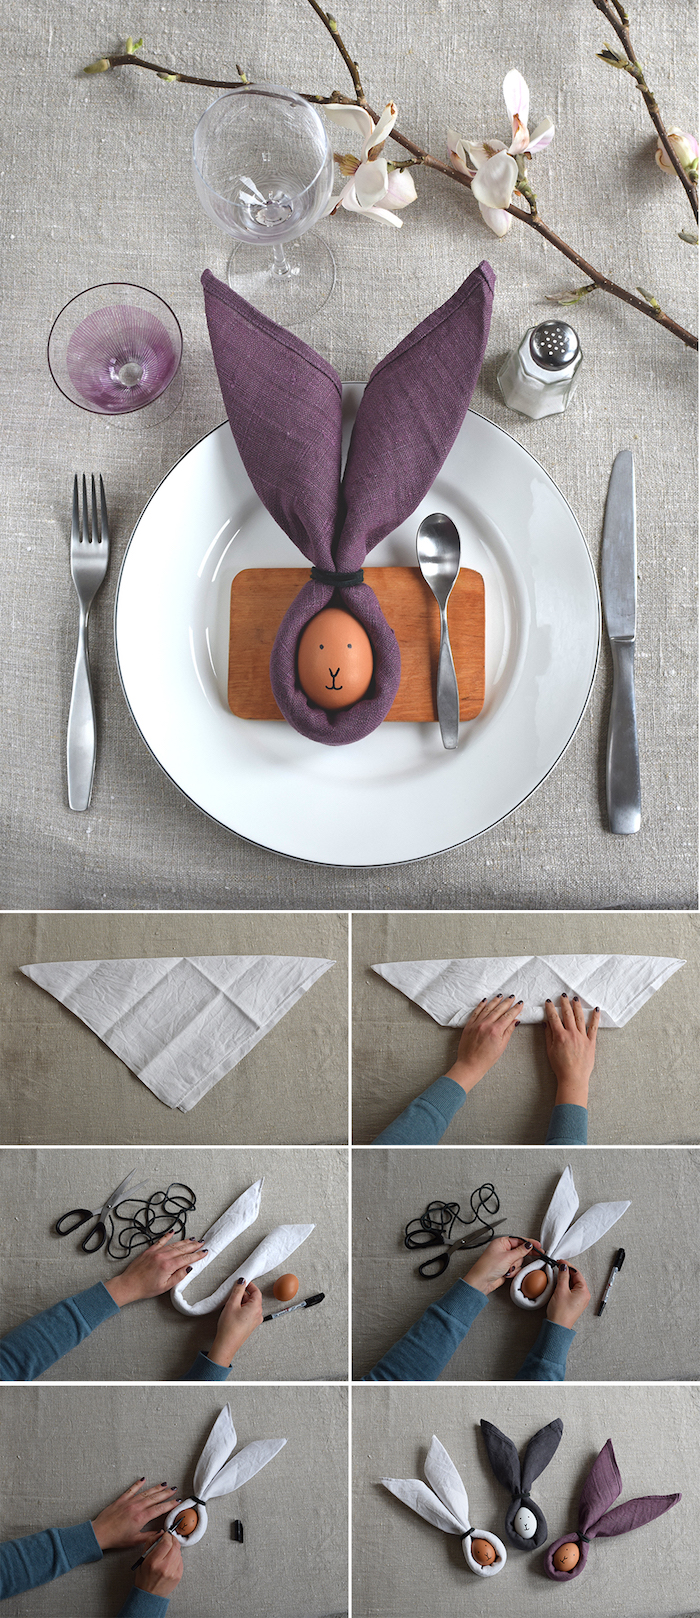 modele pliage serviette paques original avec un oeuf au centre d une serviette de tissu violet, blanc et gris foncé